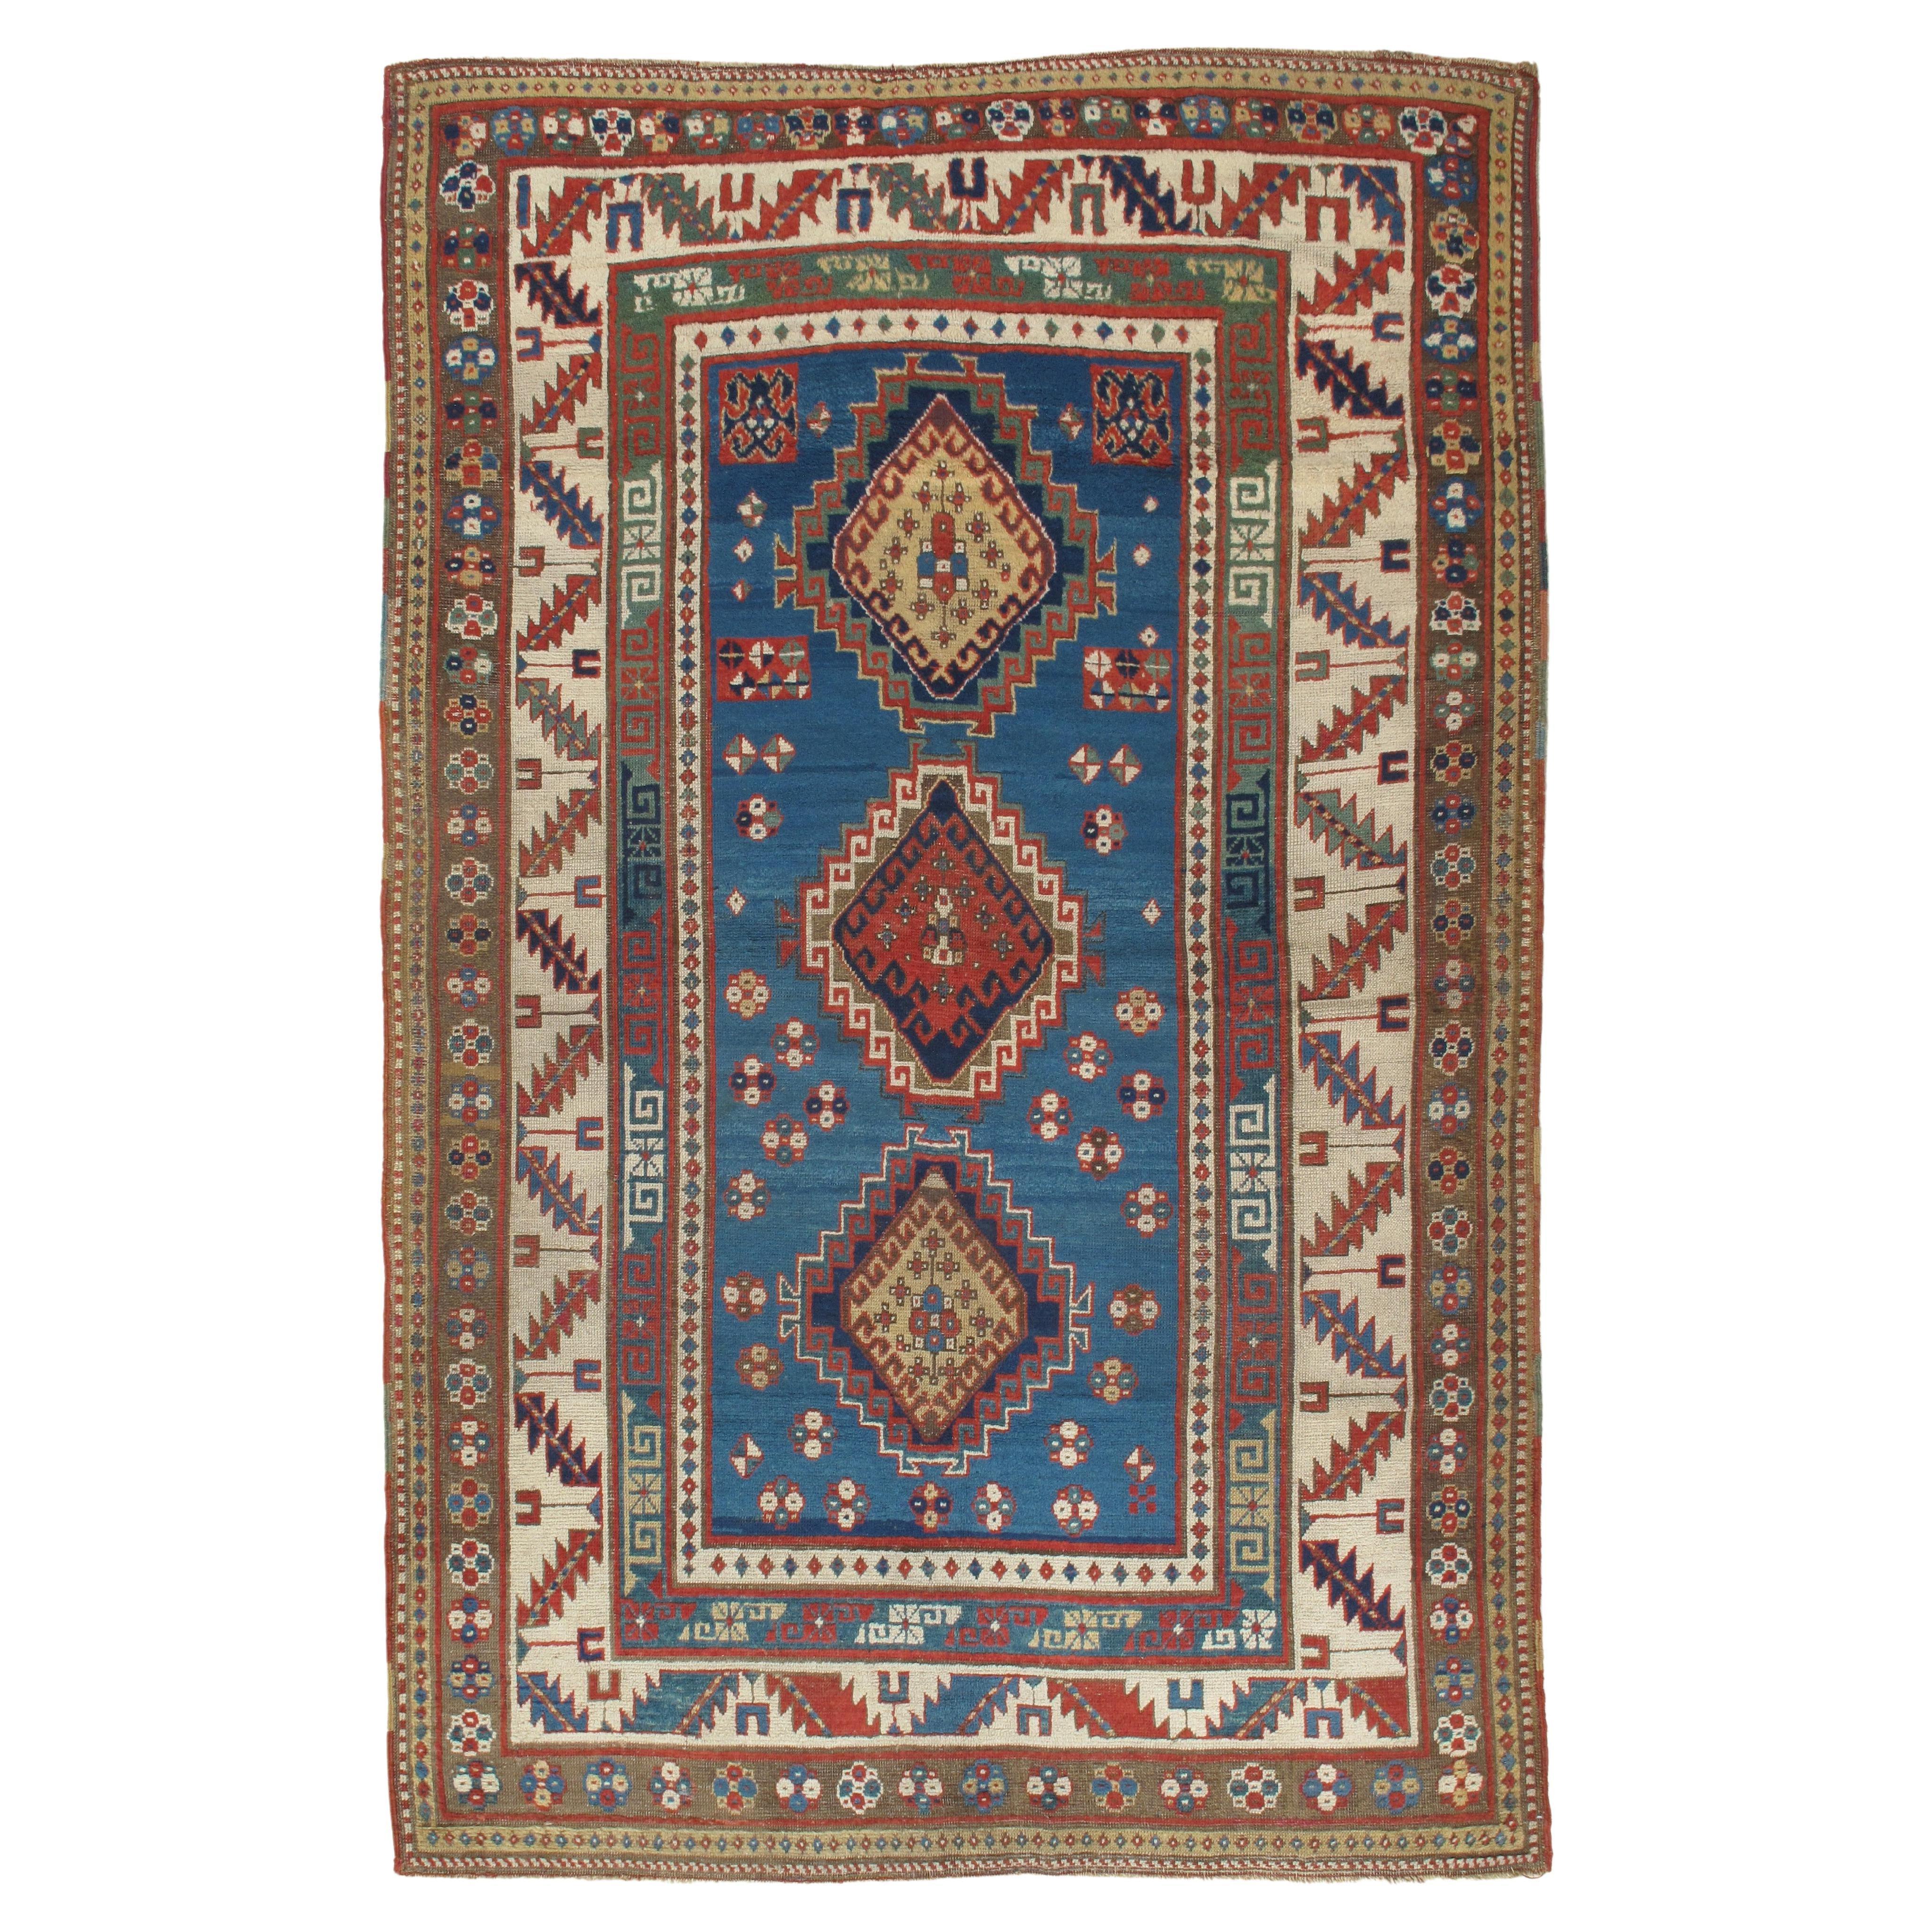 Antiker Kazak-Teppich, handgefertigt, Wolle, Rost, Elfenbein, Marineblau, Hellblau und Gold